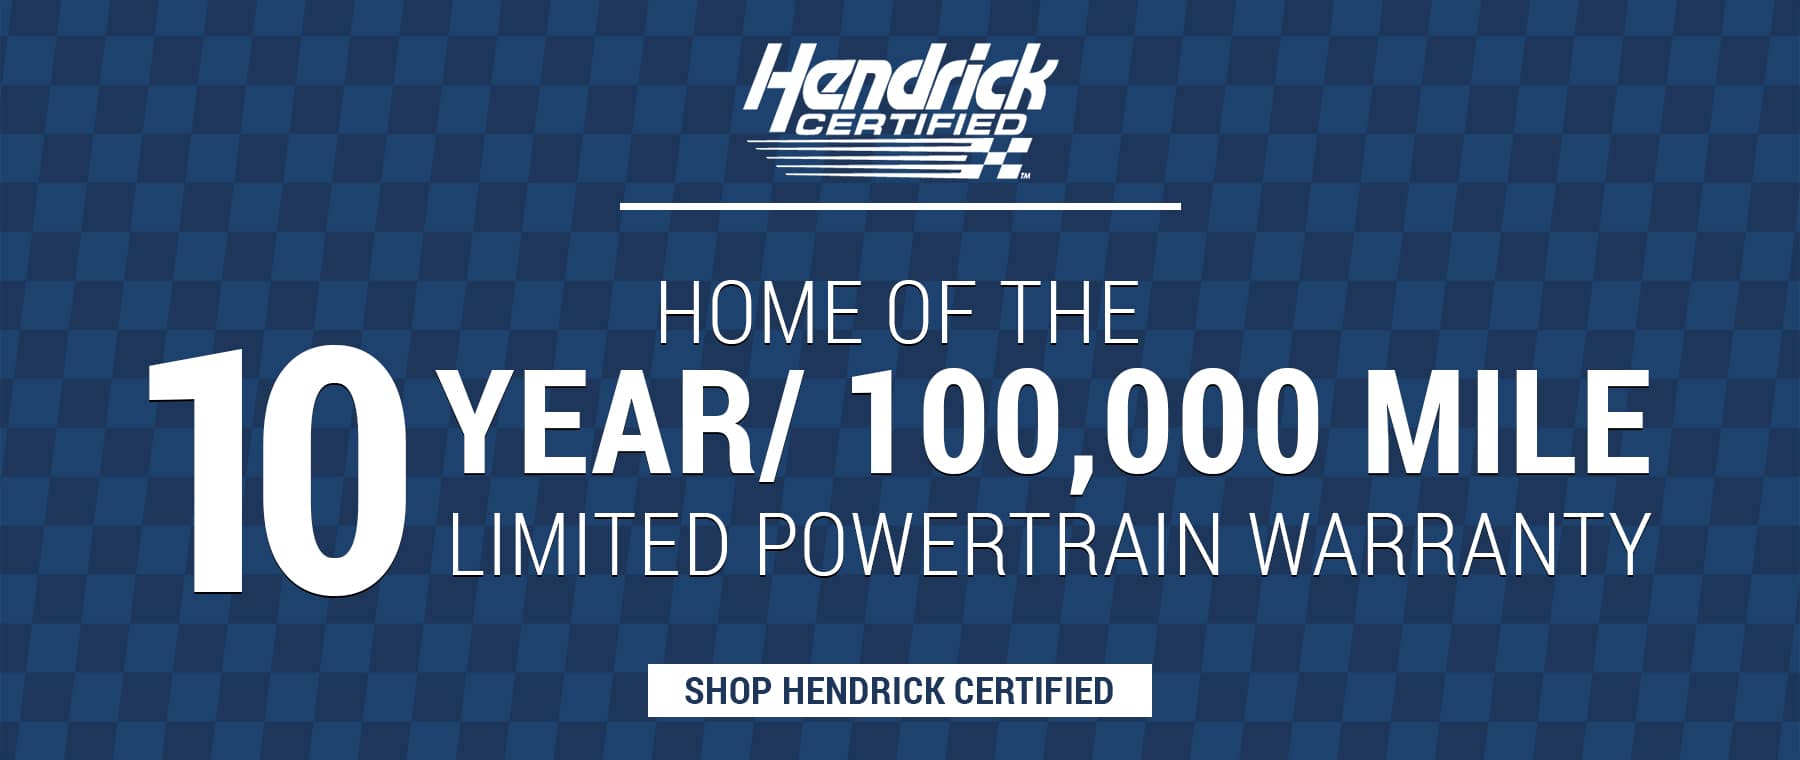 Shop Hendrick Certified